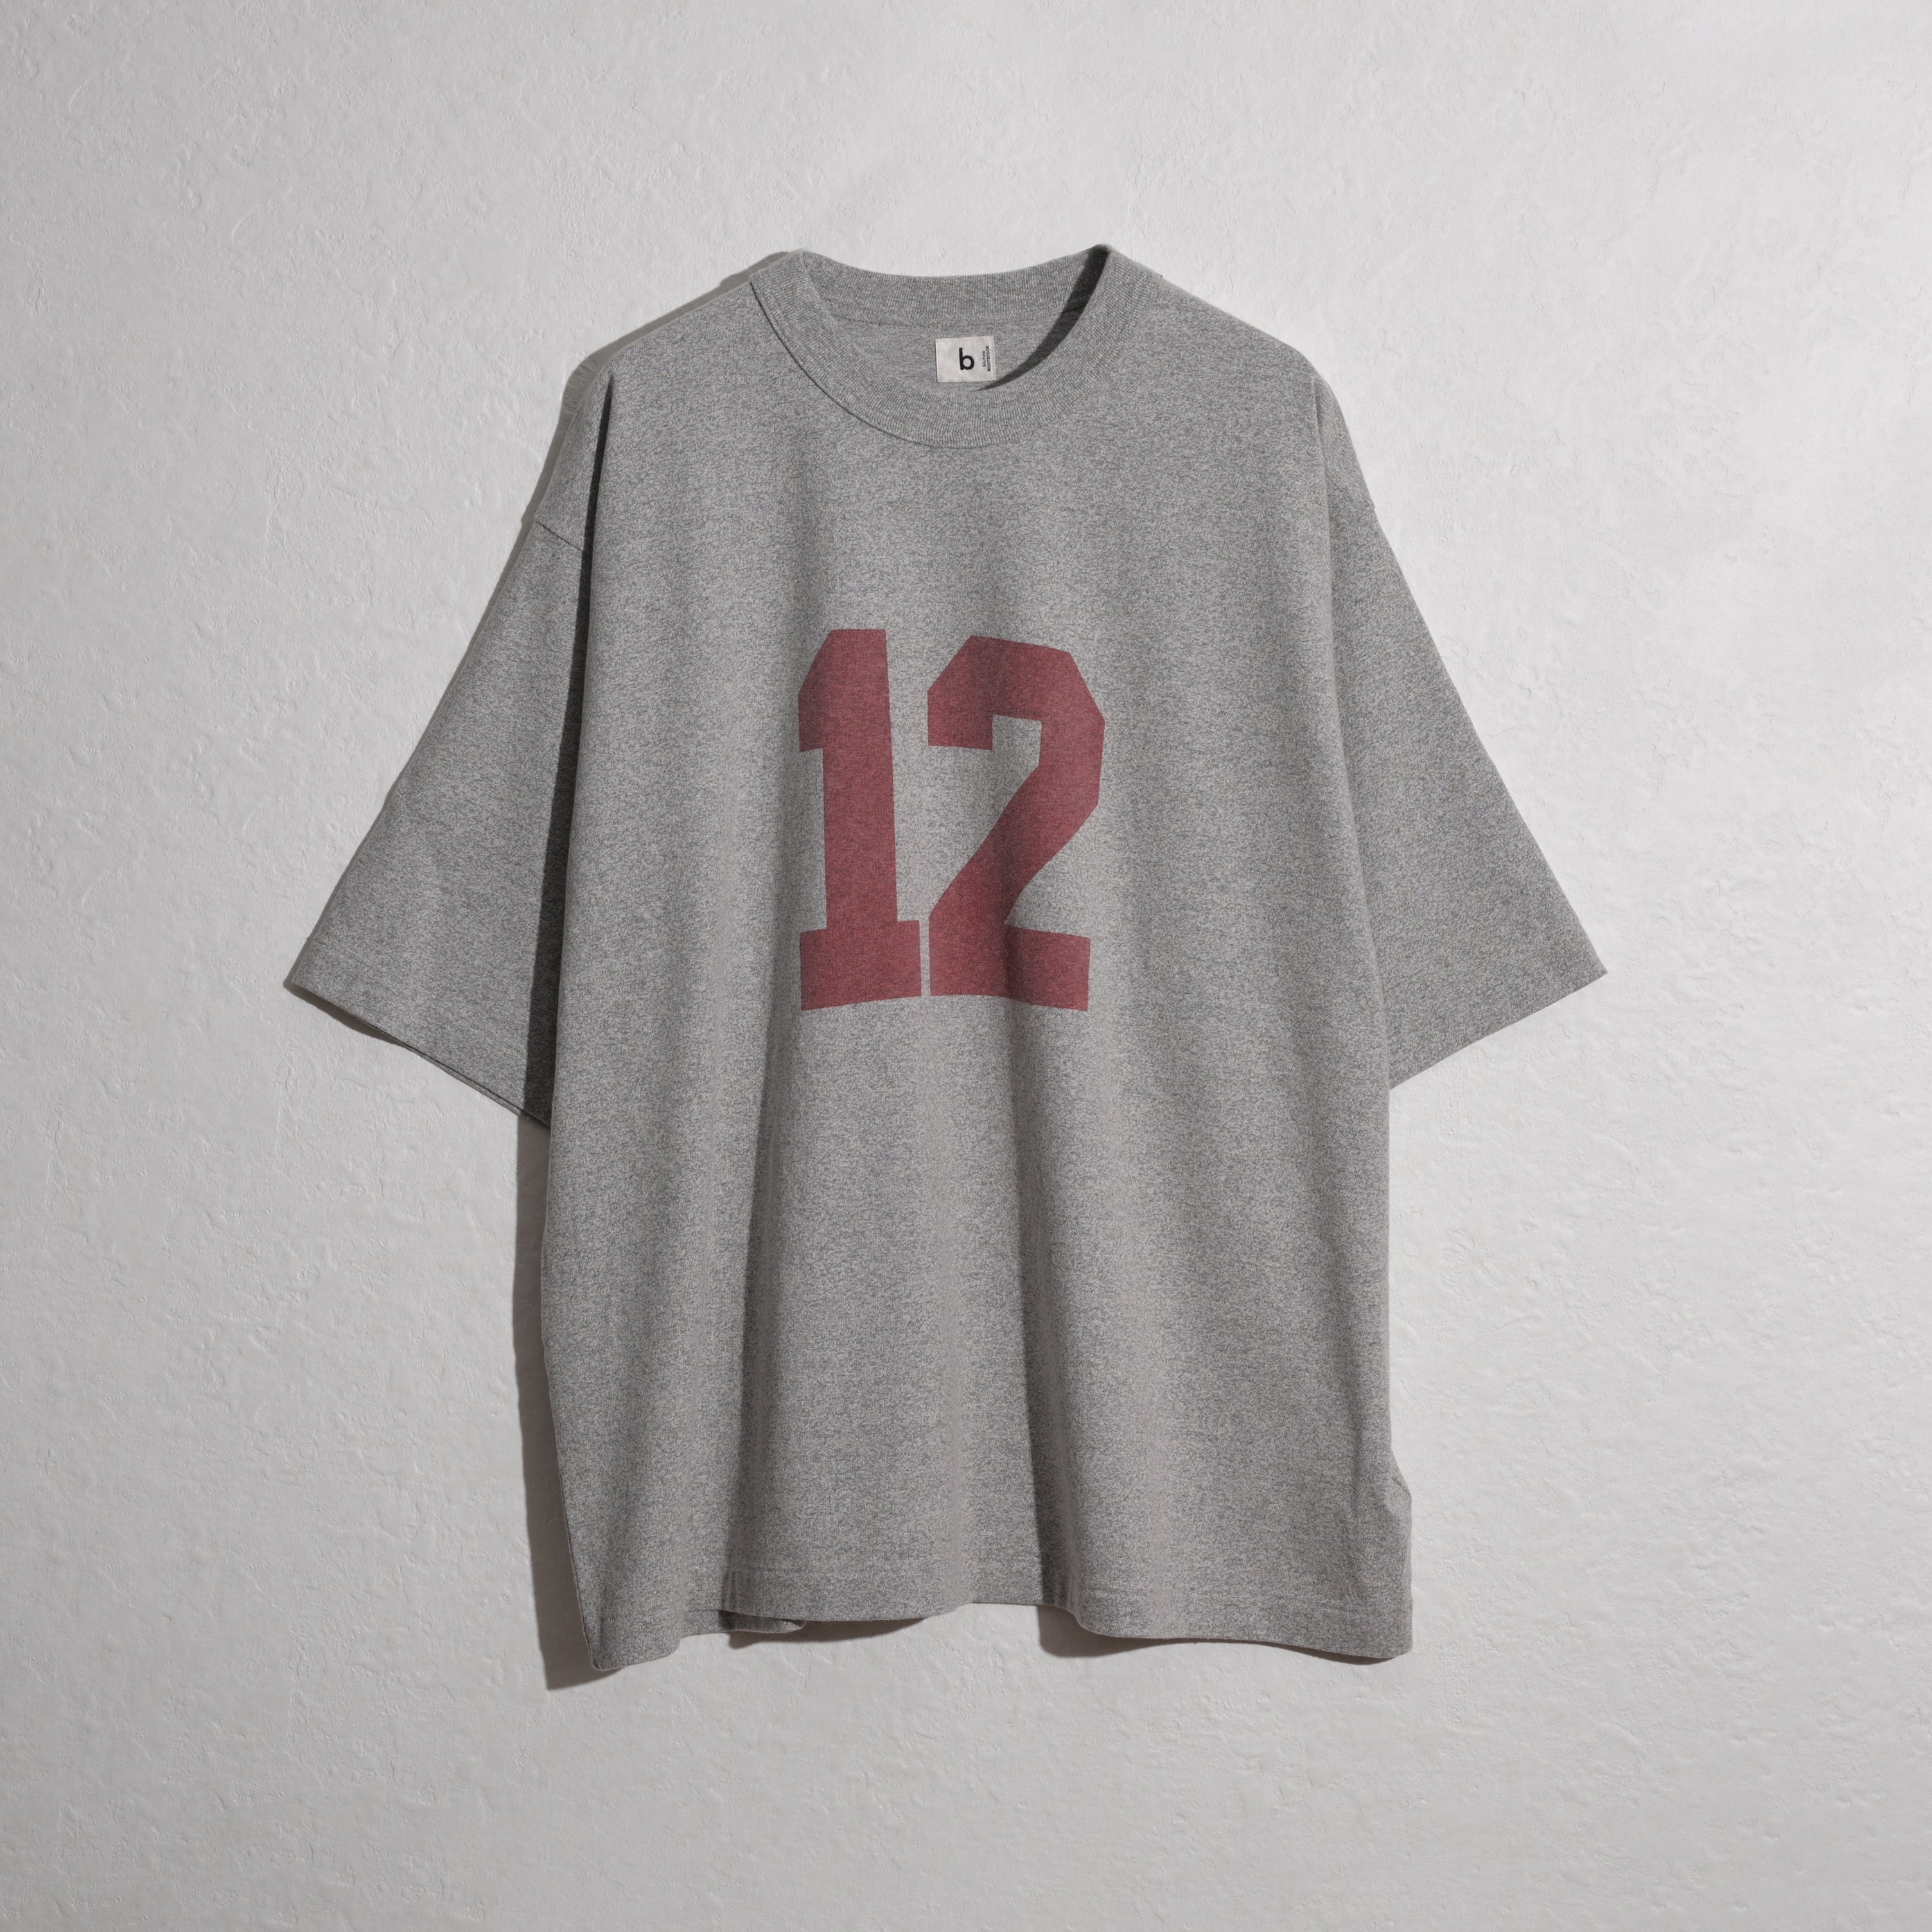 Tシャツ/カットソー(半袖/袖なし)blurhms ROOTSTOCK ブラームスルーツストック Tシャツ IT 2